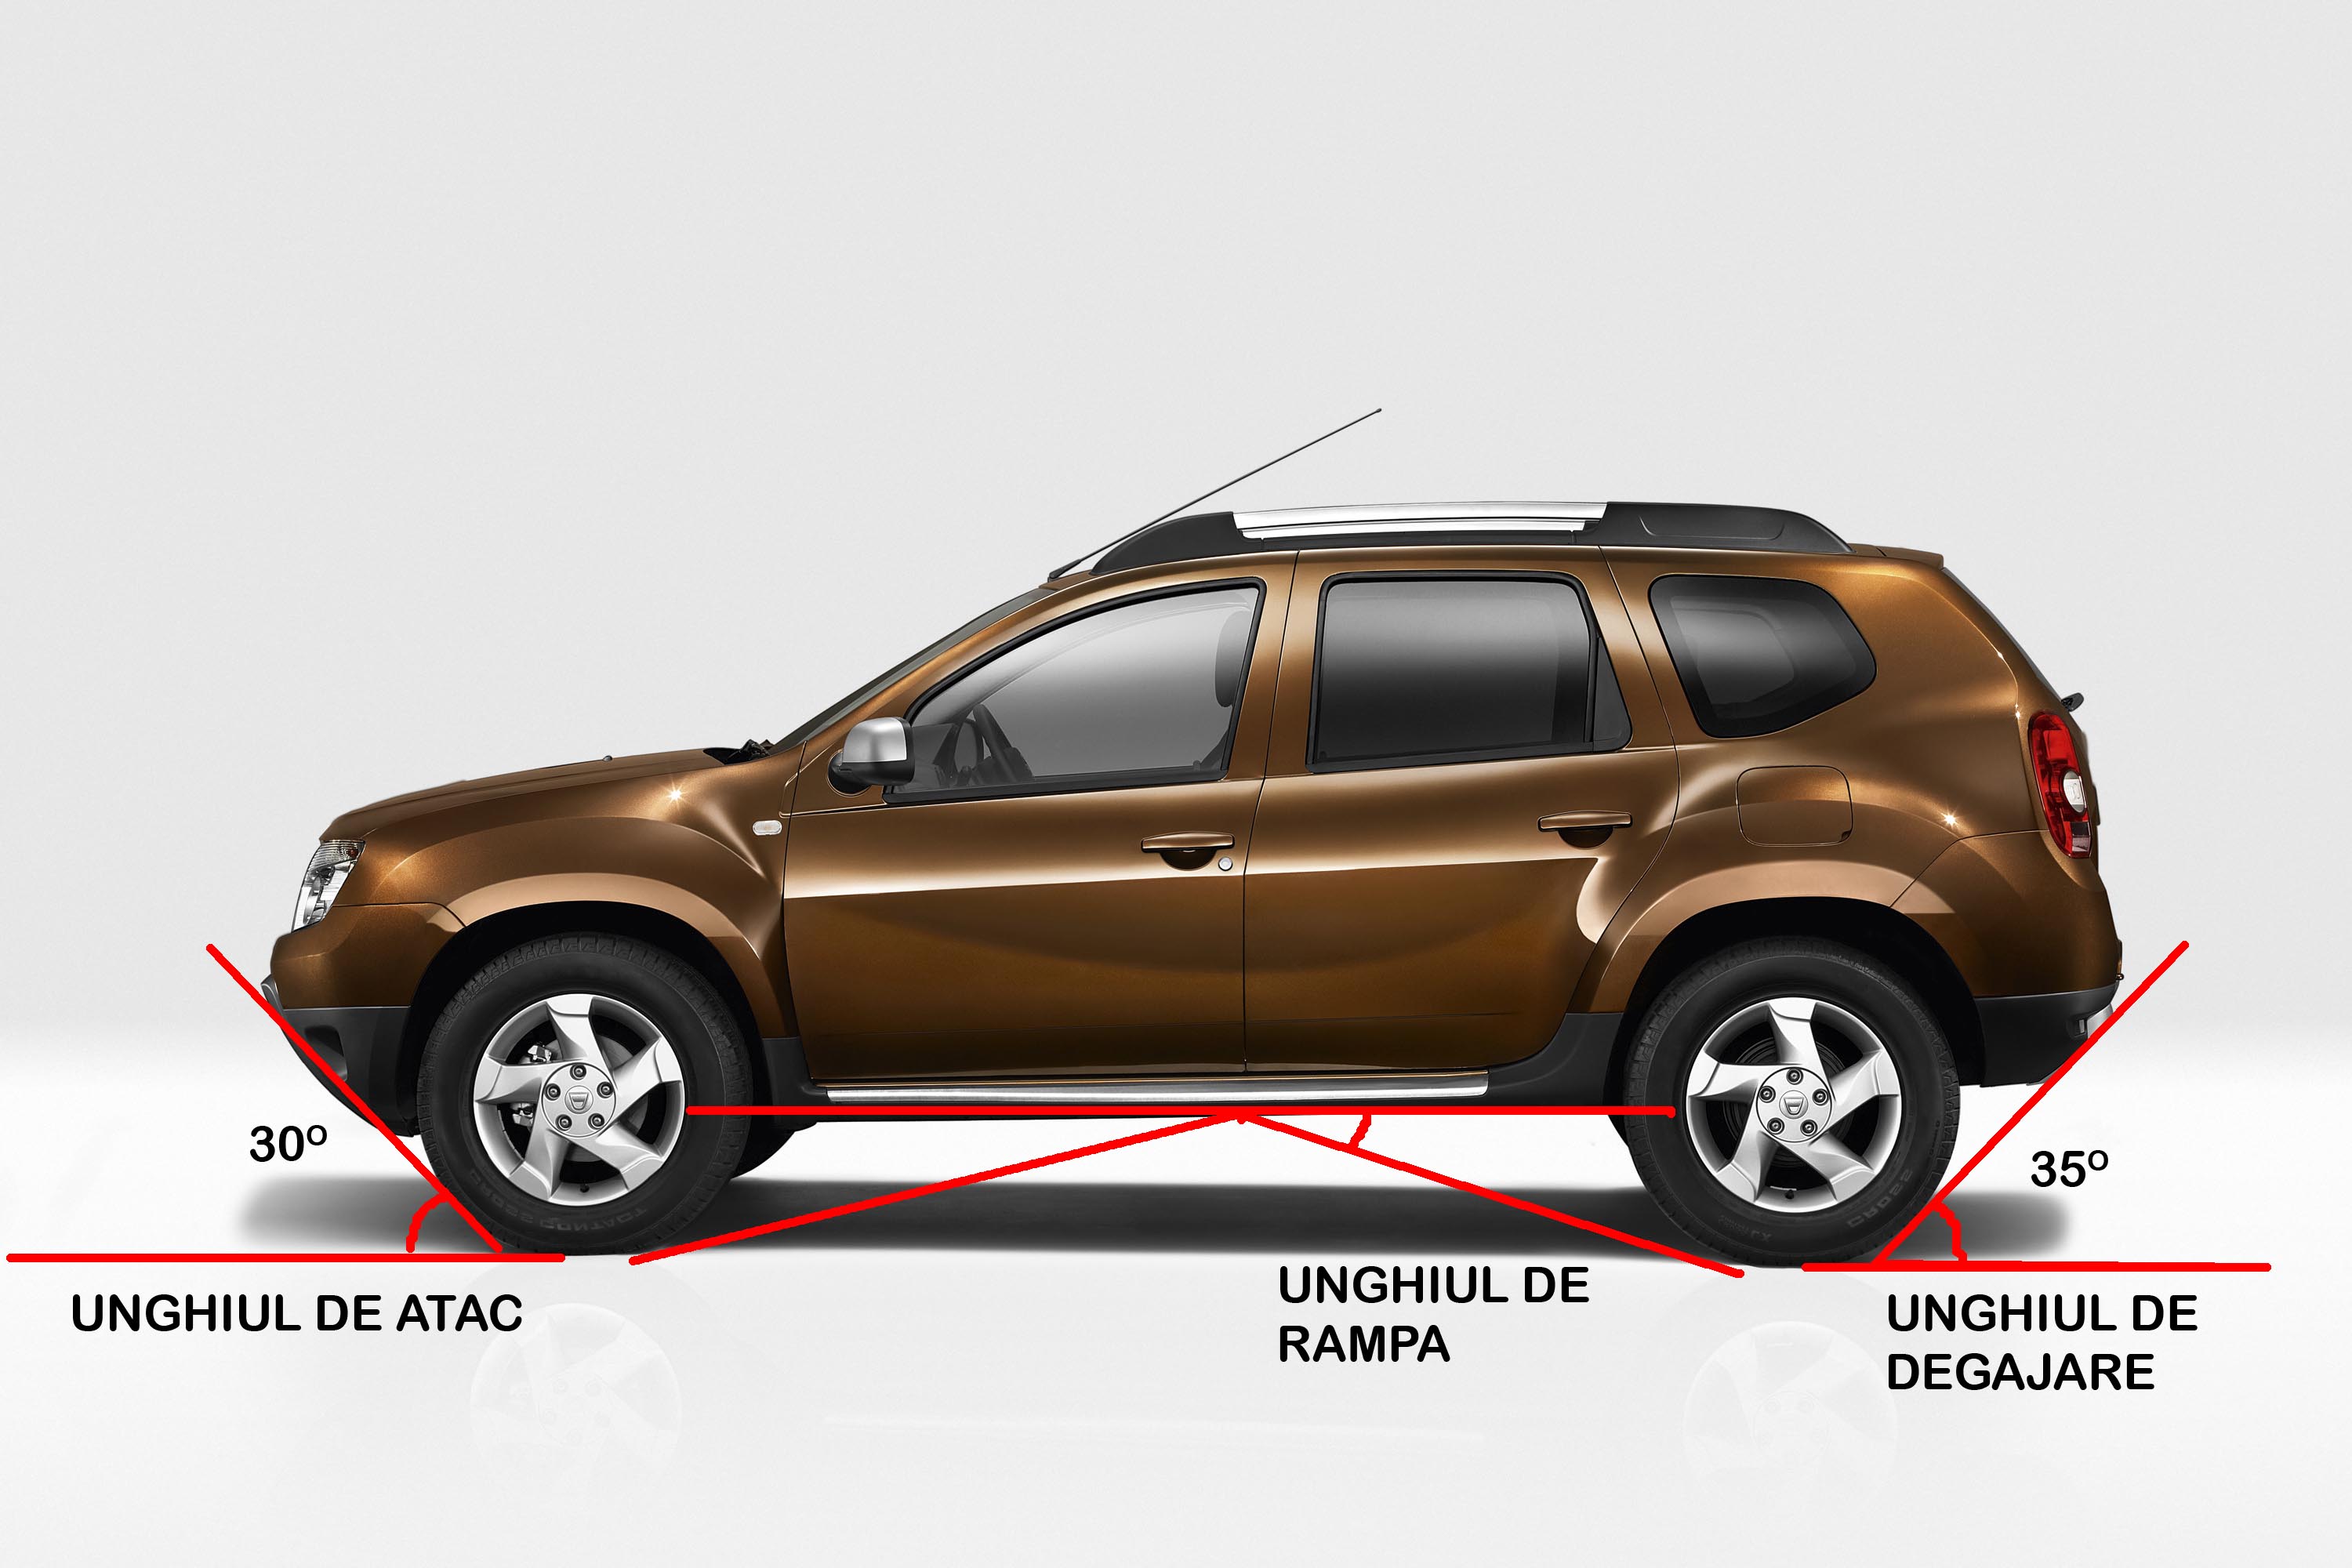 Garda la sol, unghiul de atac, unghiul de iesire si unghiul de rampa, principalele valori care arata capacitatile lui Dacia Duster in afara soselei.